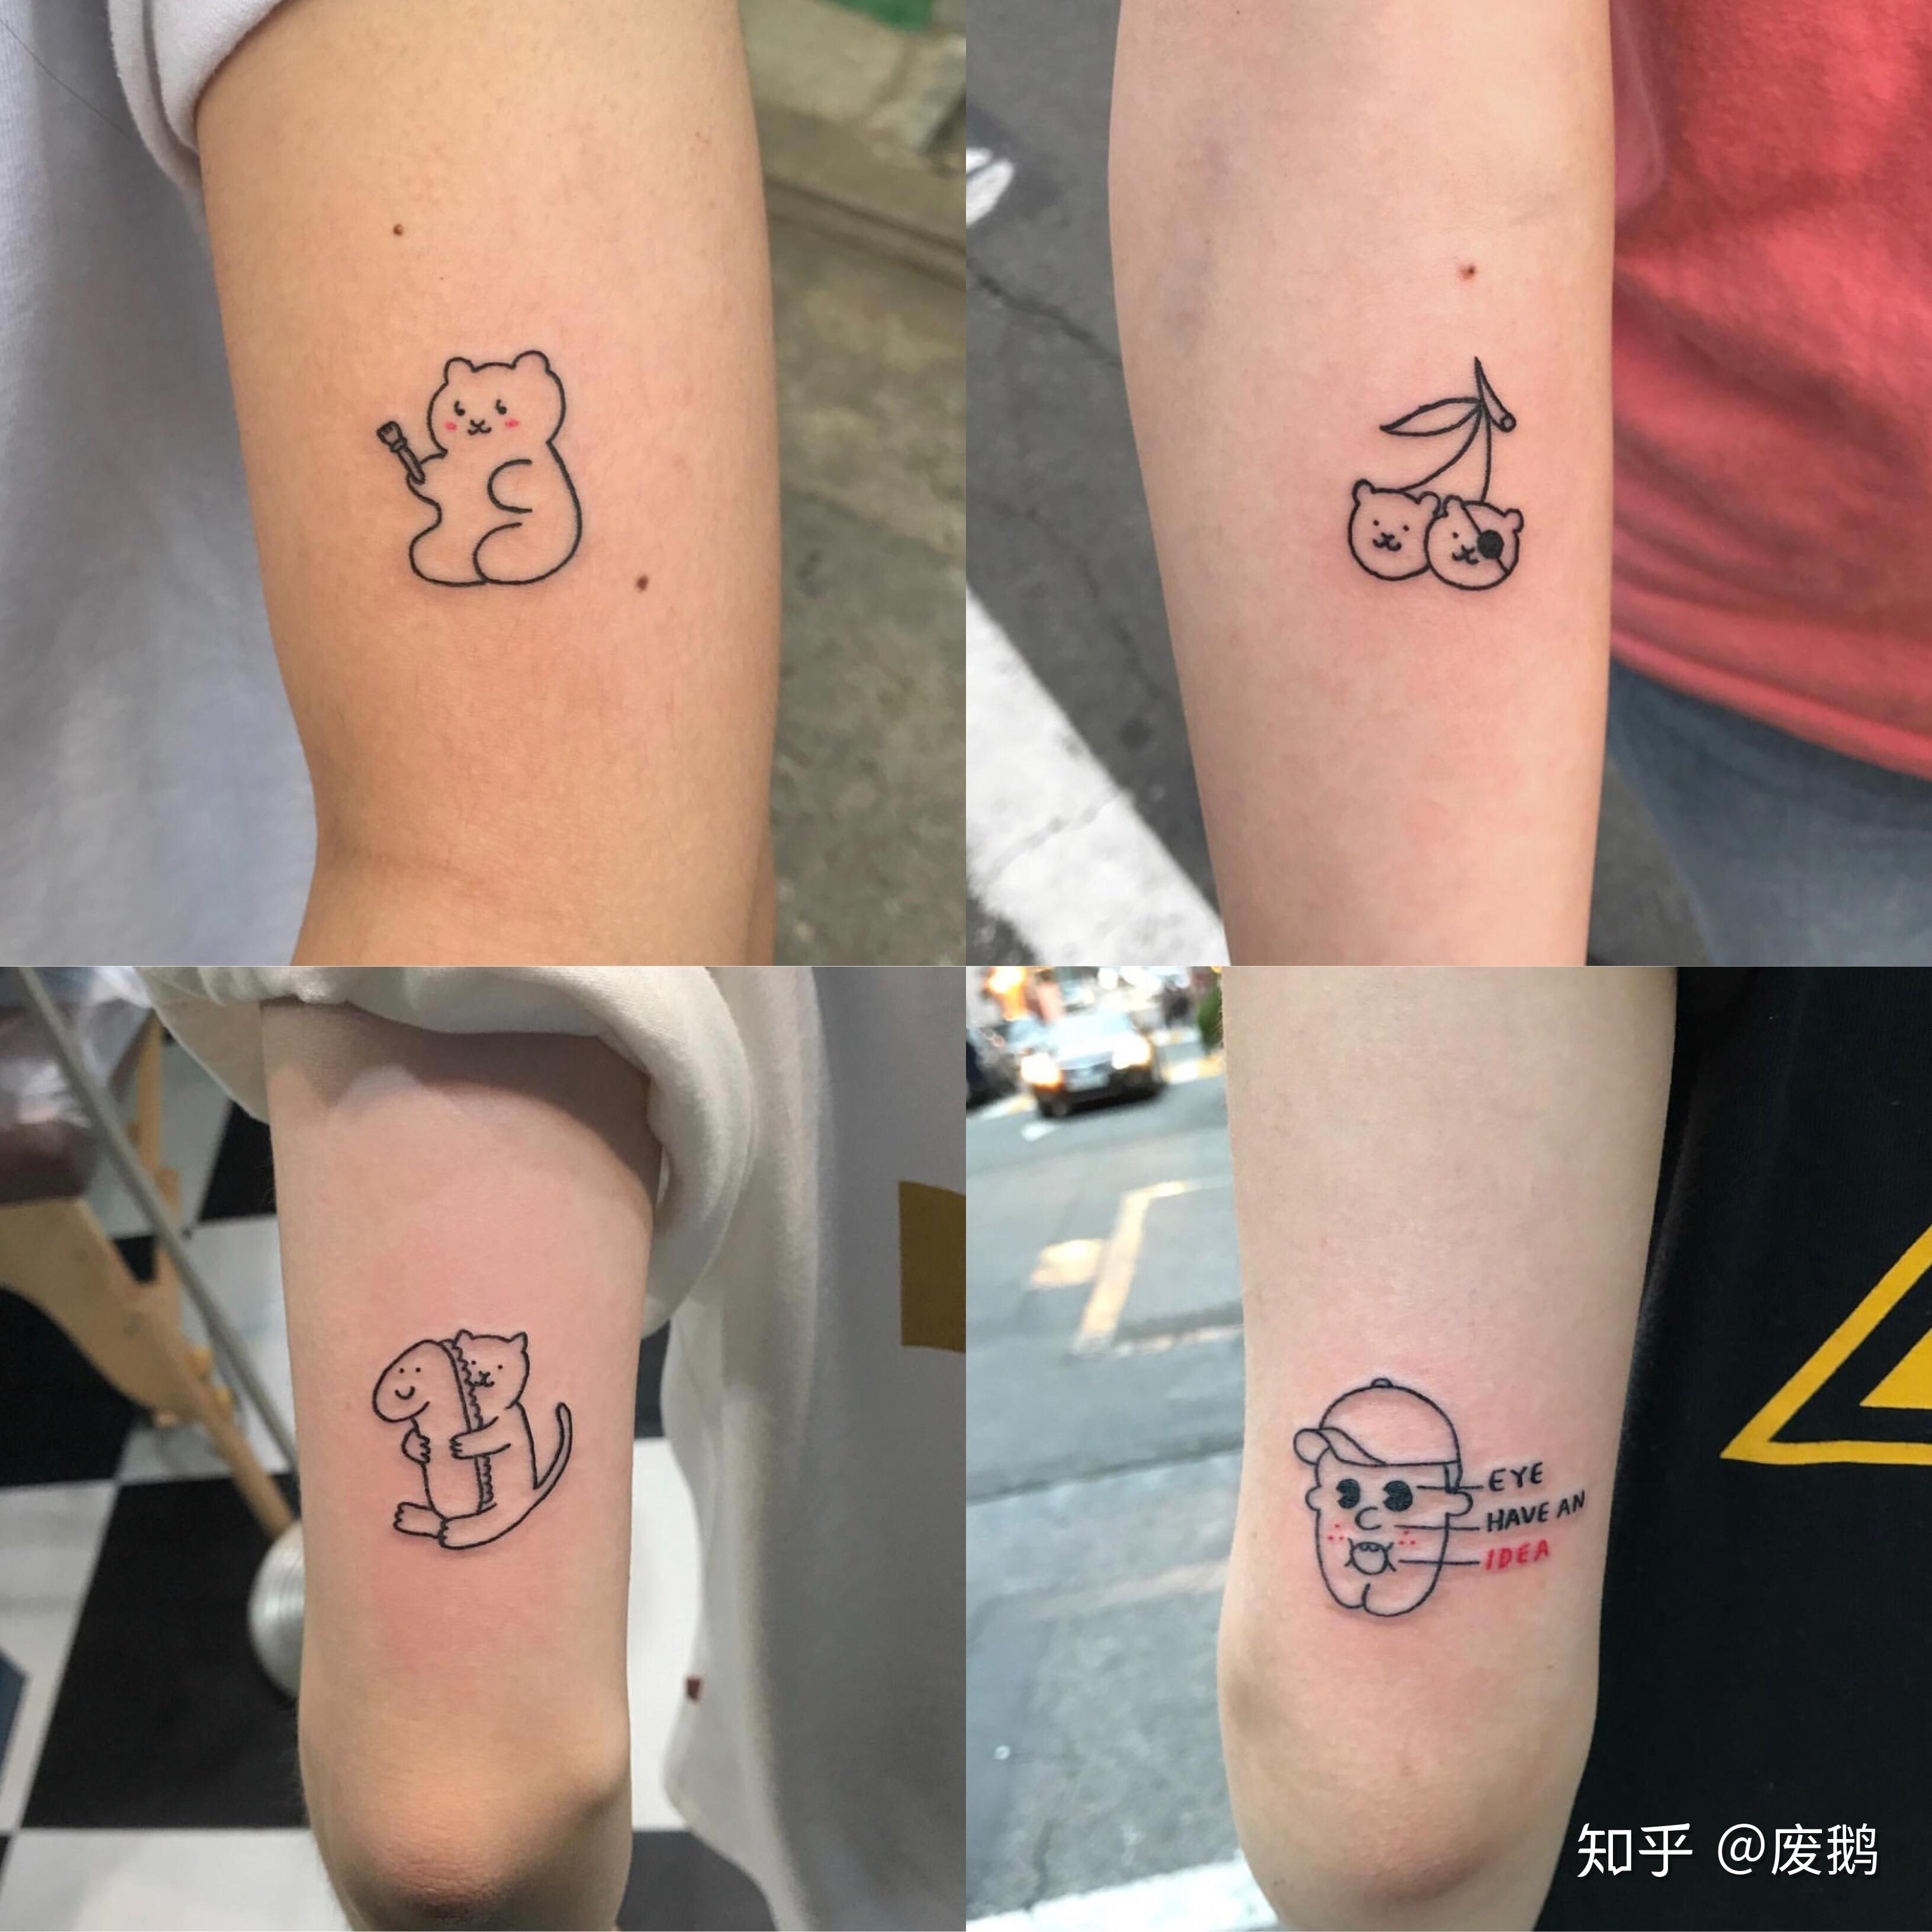 sMrZhao纹身推荐（第 174 期）| 彩色 · 清新 · 彩虹童趣迷你纹身 - 知乎